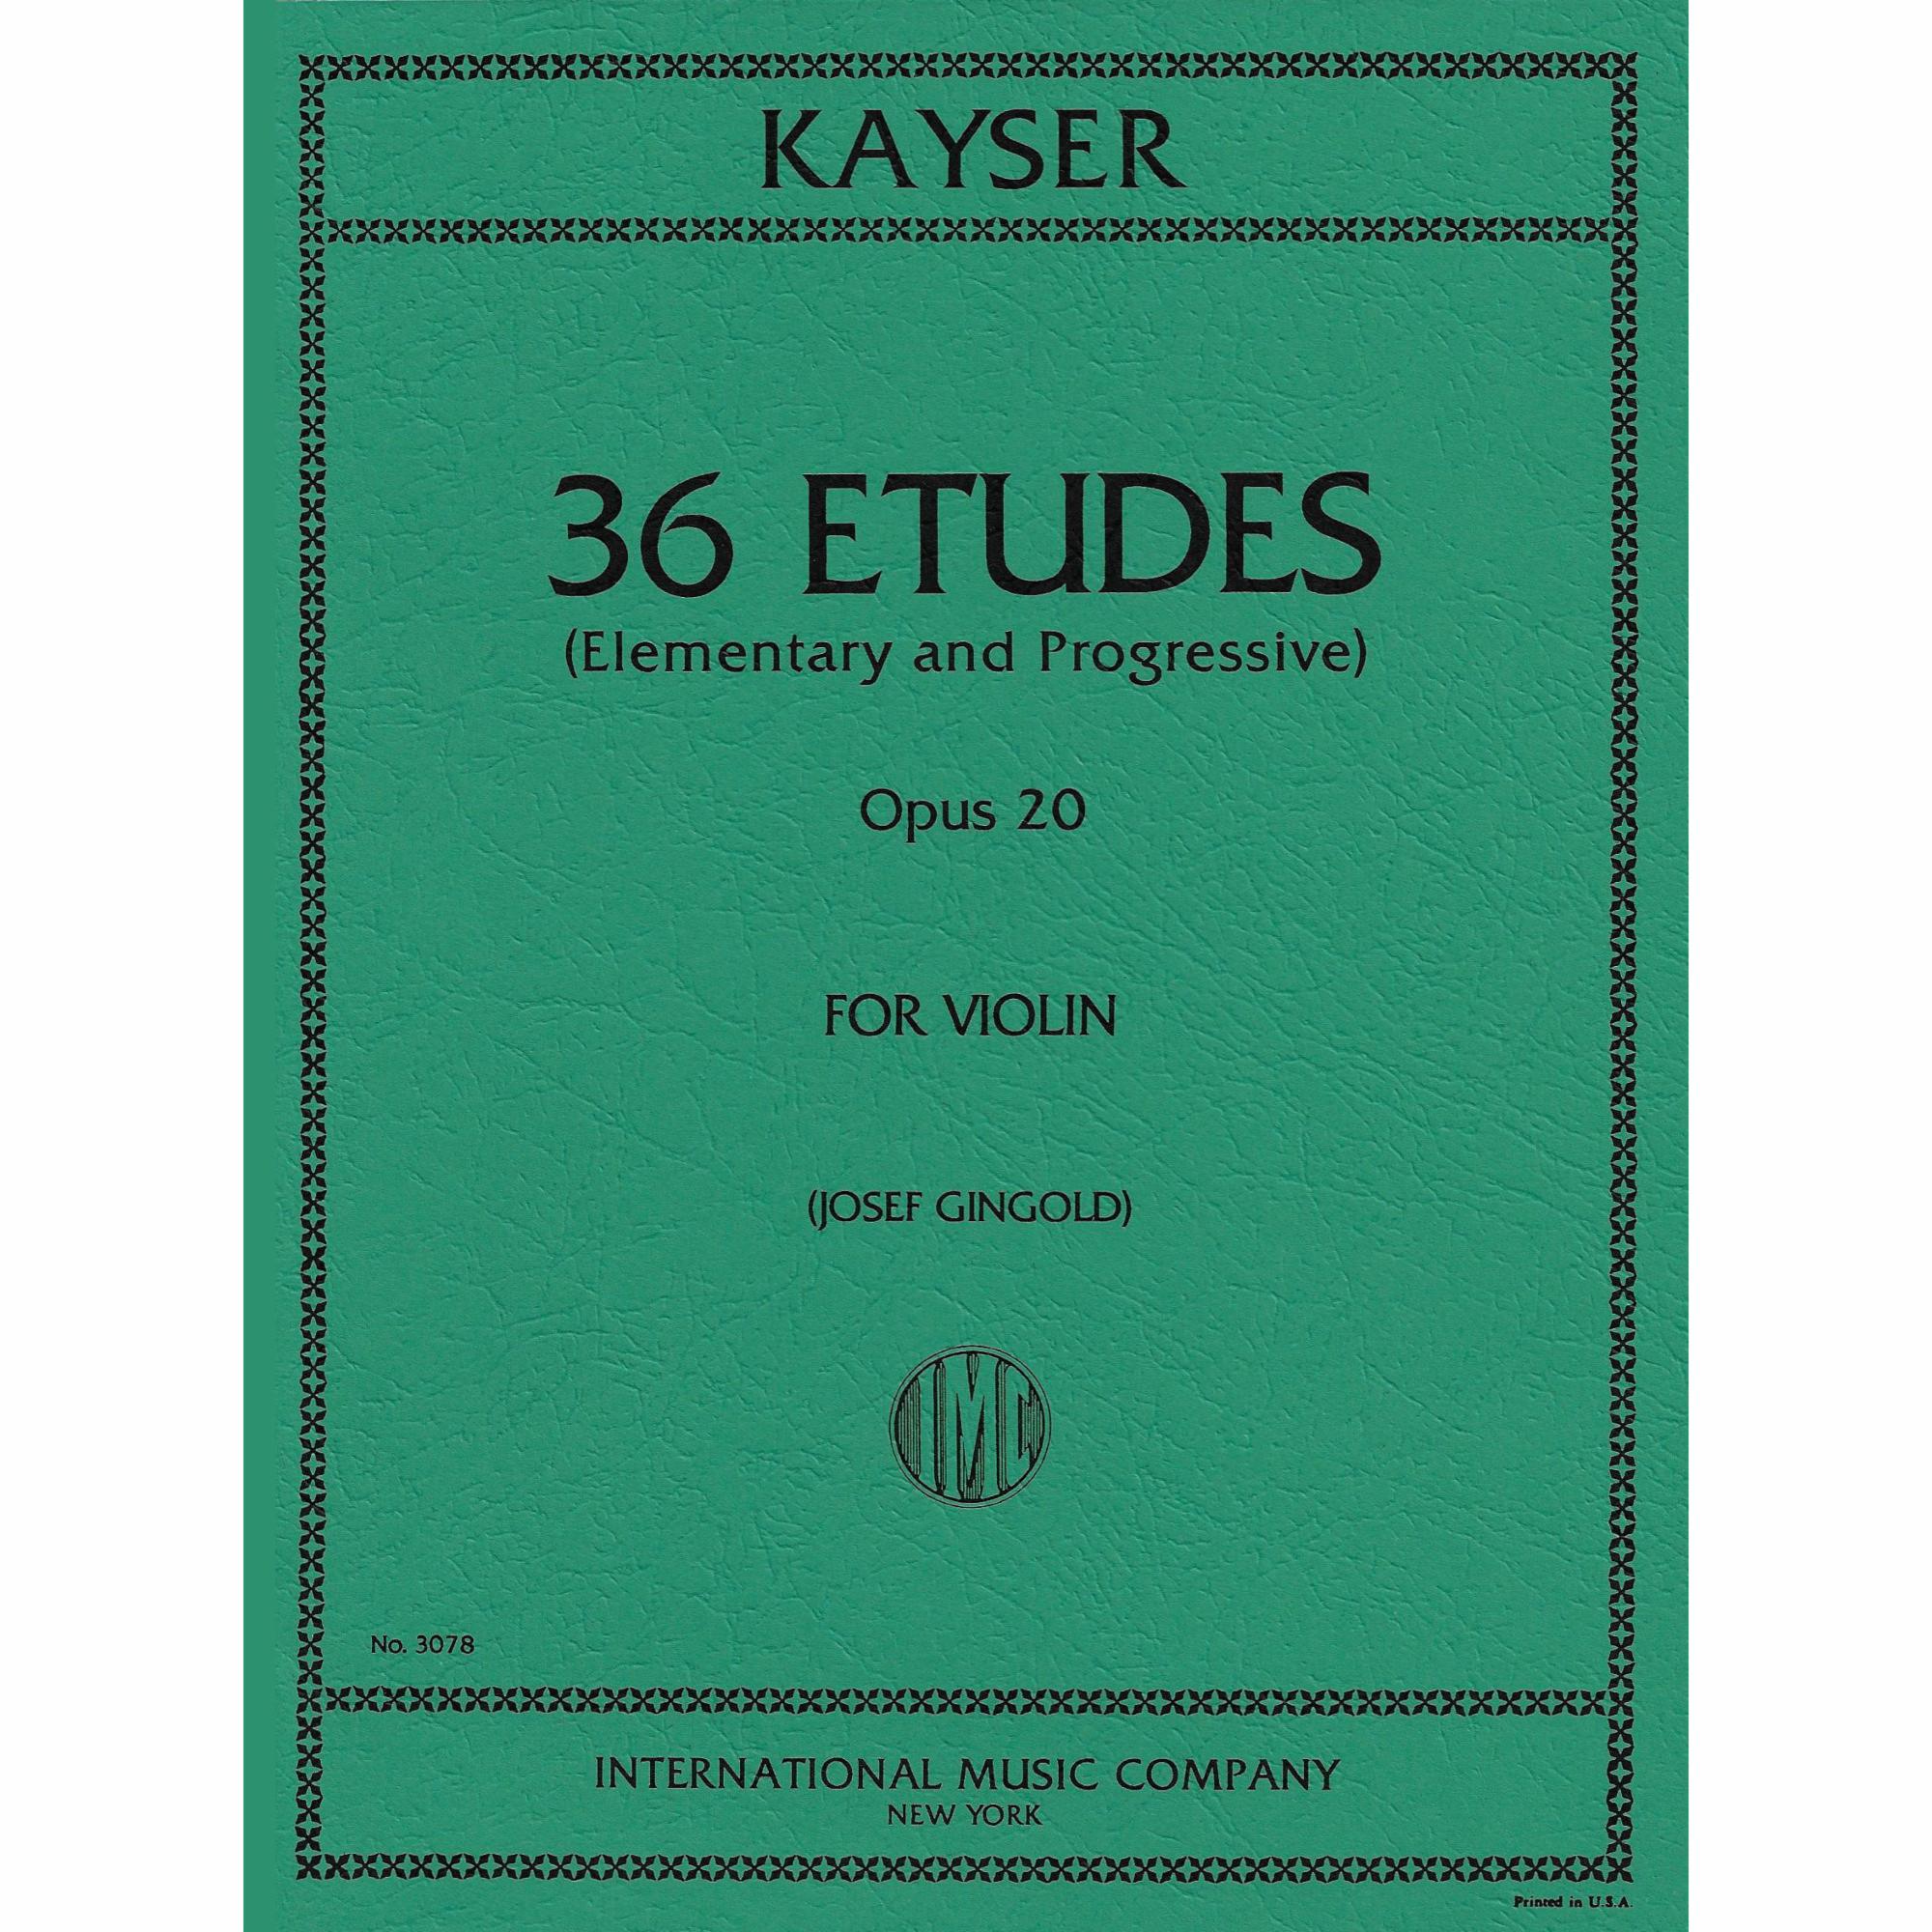 Kayser -- 36 Etudes, Op. 20 for Violin